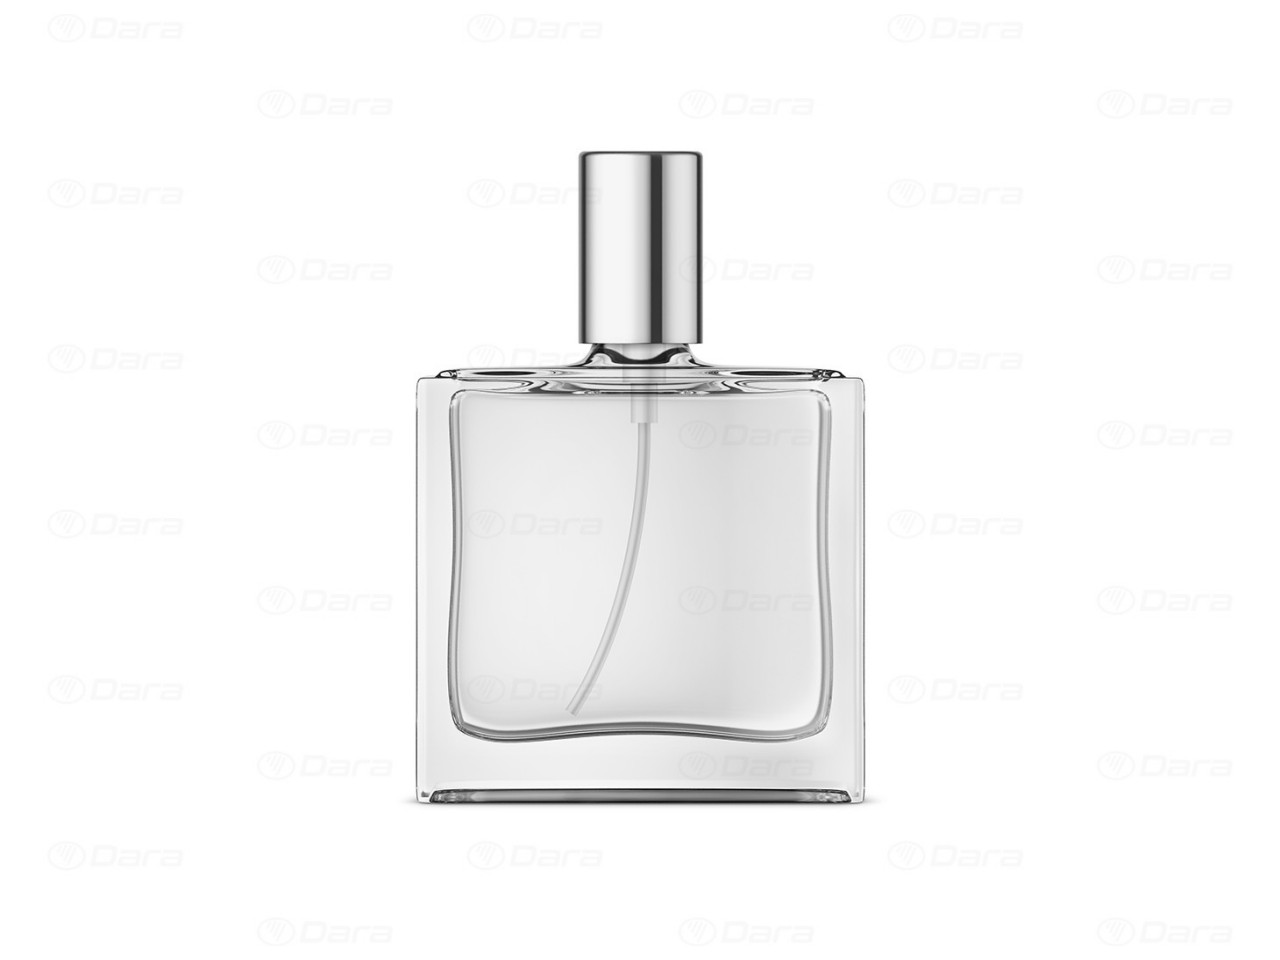 Llenadoras - cerradoras para perfumes con bomba spray crimpada